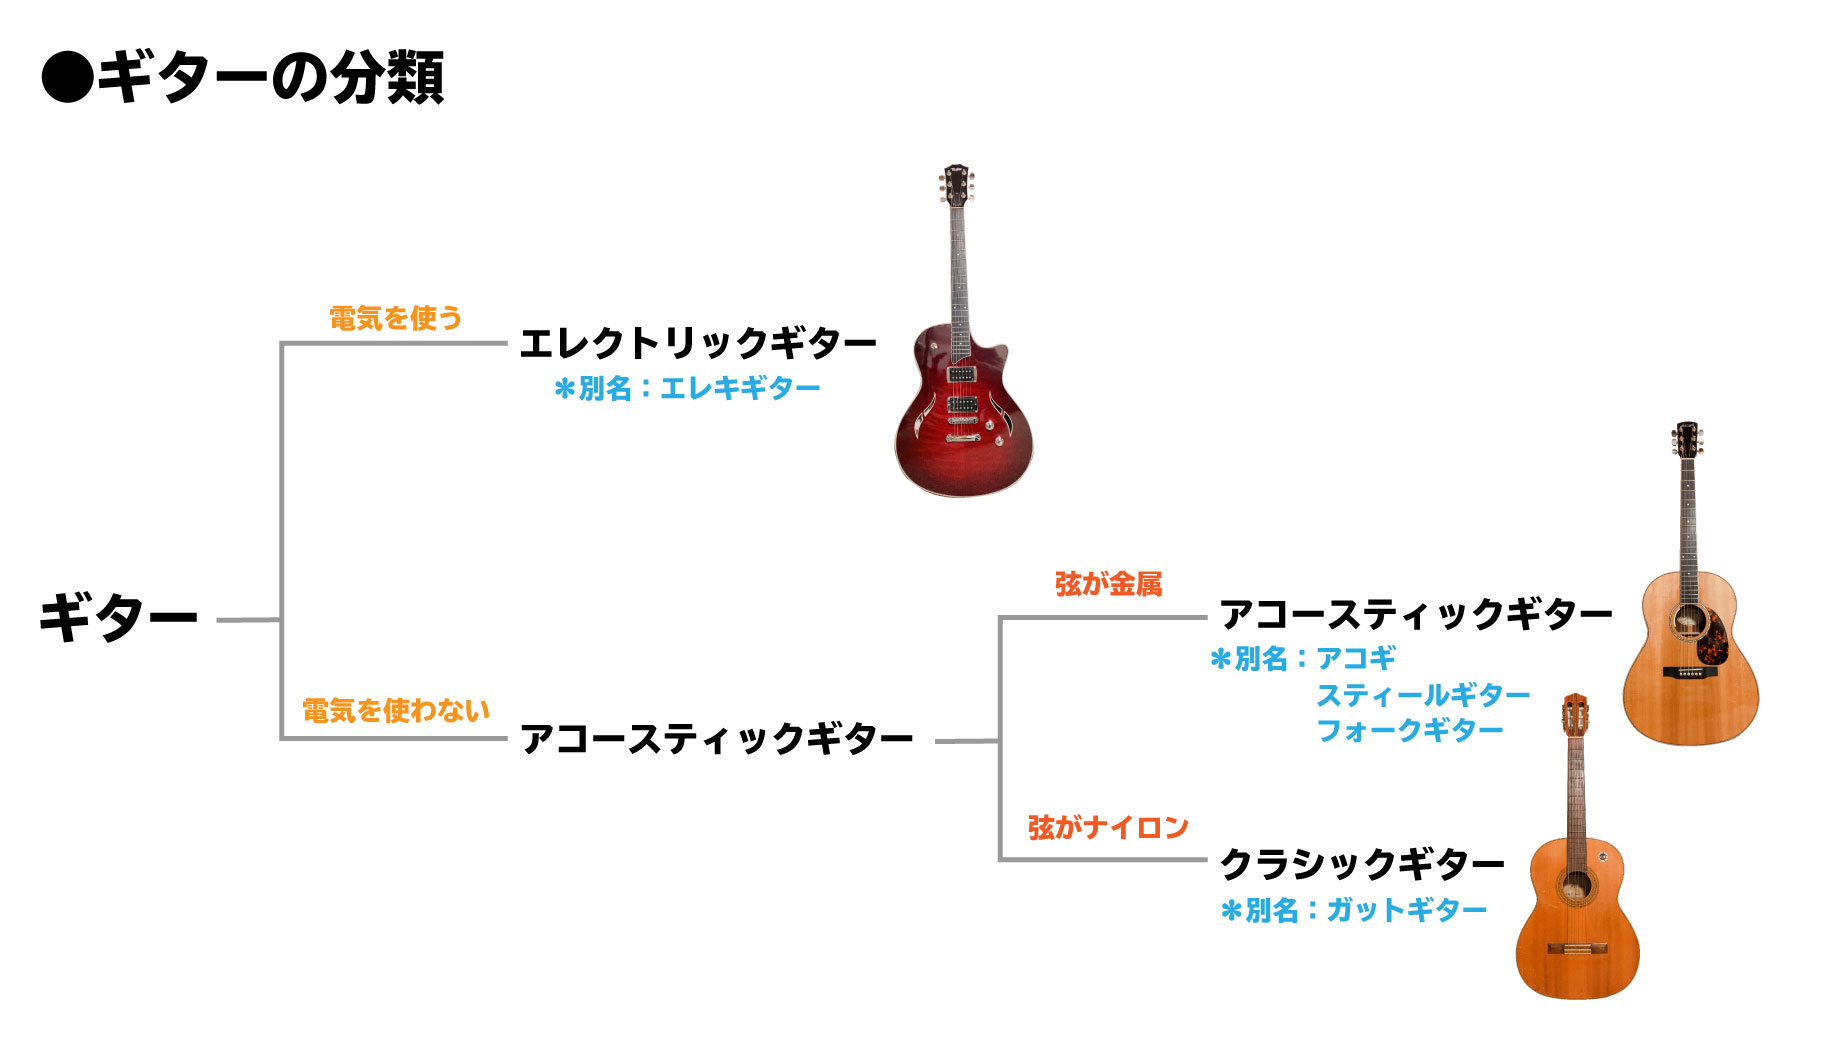 多様な ギター エレキギターギター弦アコースティックスチールスチール弦ギターアコースティックギターストリングクラシックギター エレクトリック